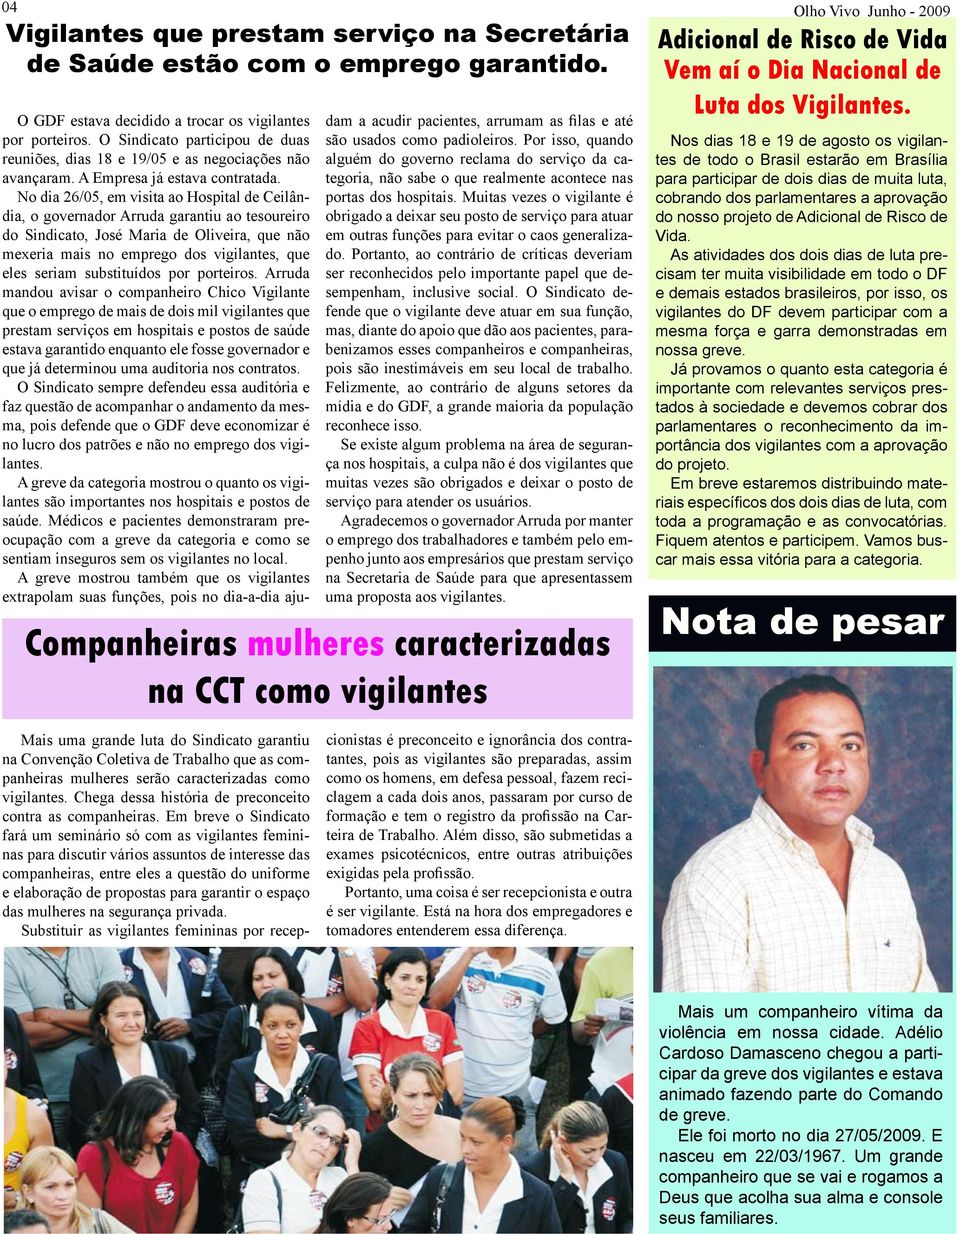 No dia 26/05, em visita ao Hospital de Ceilândia, o governador Arruda garantiu ao tesoureiro do Sindicato, José Maria de Oliveira, que não mexeria mais no emprego dos vigilantes, que eles seriam